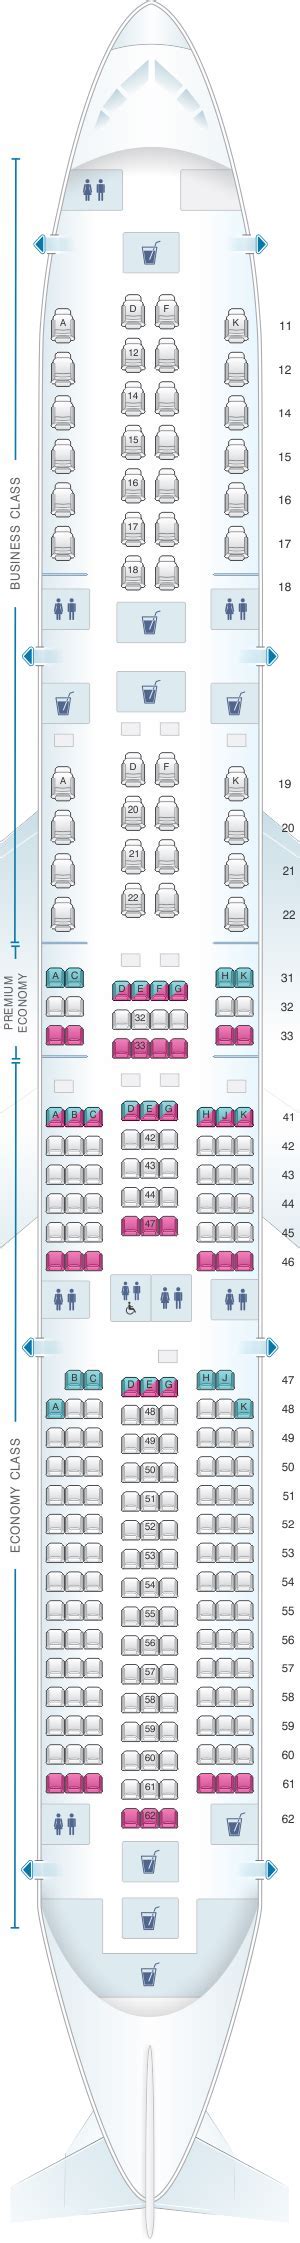 Airbus A350 900 Singapore Airlines Economy Premium Economy Class